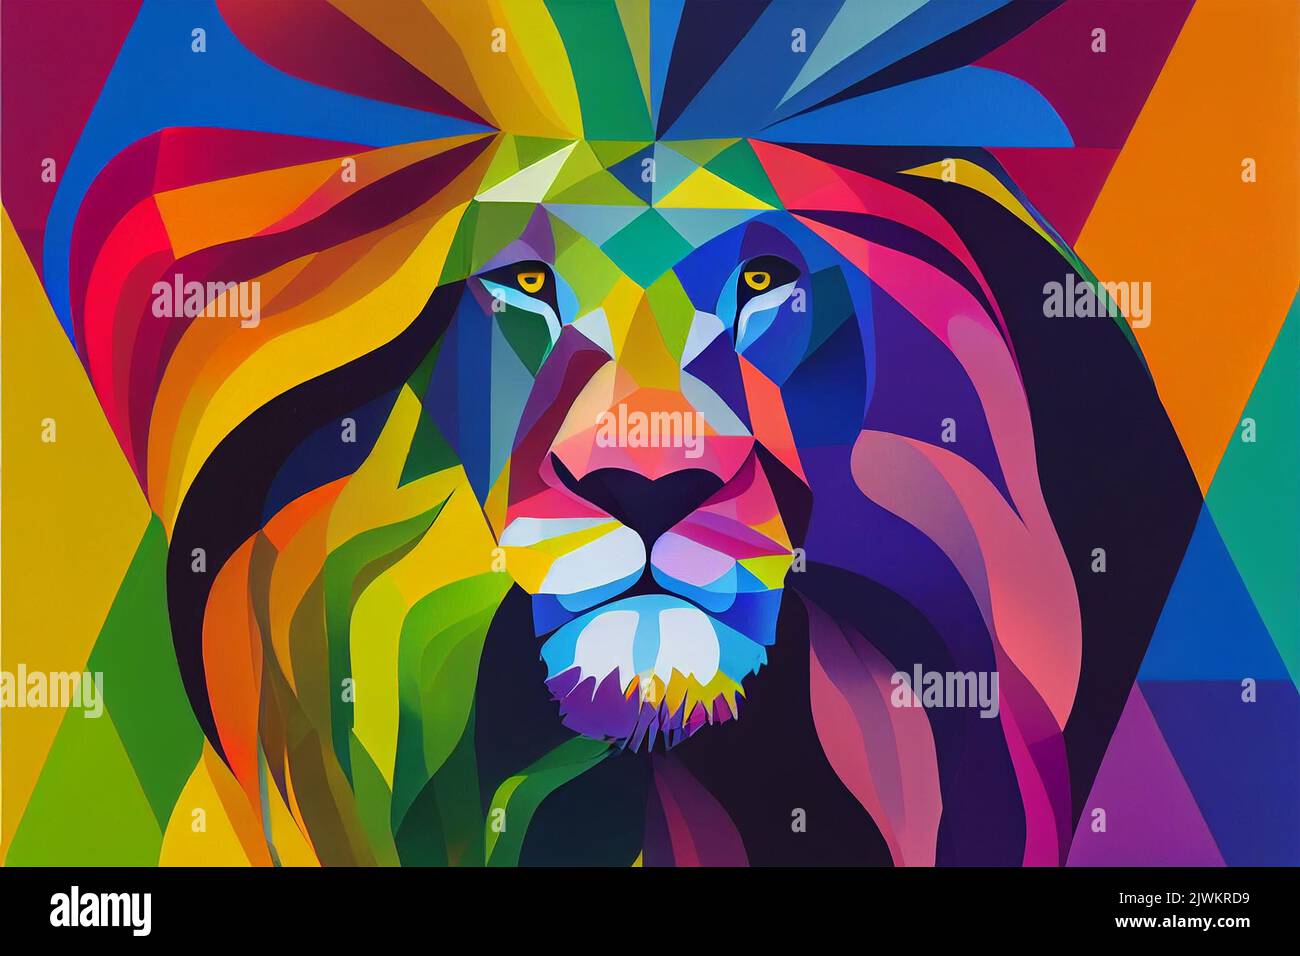 Illustrazione grafica graffiti di un leone forte. Figura ideale per l'uso virtuale o stampato. Foto Stock